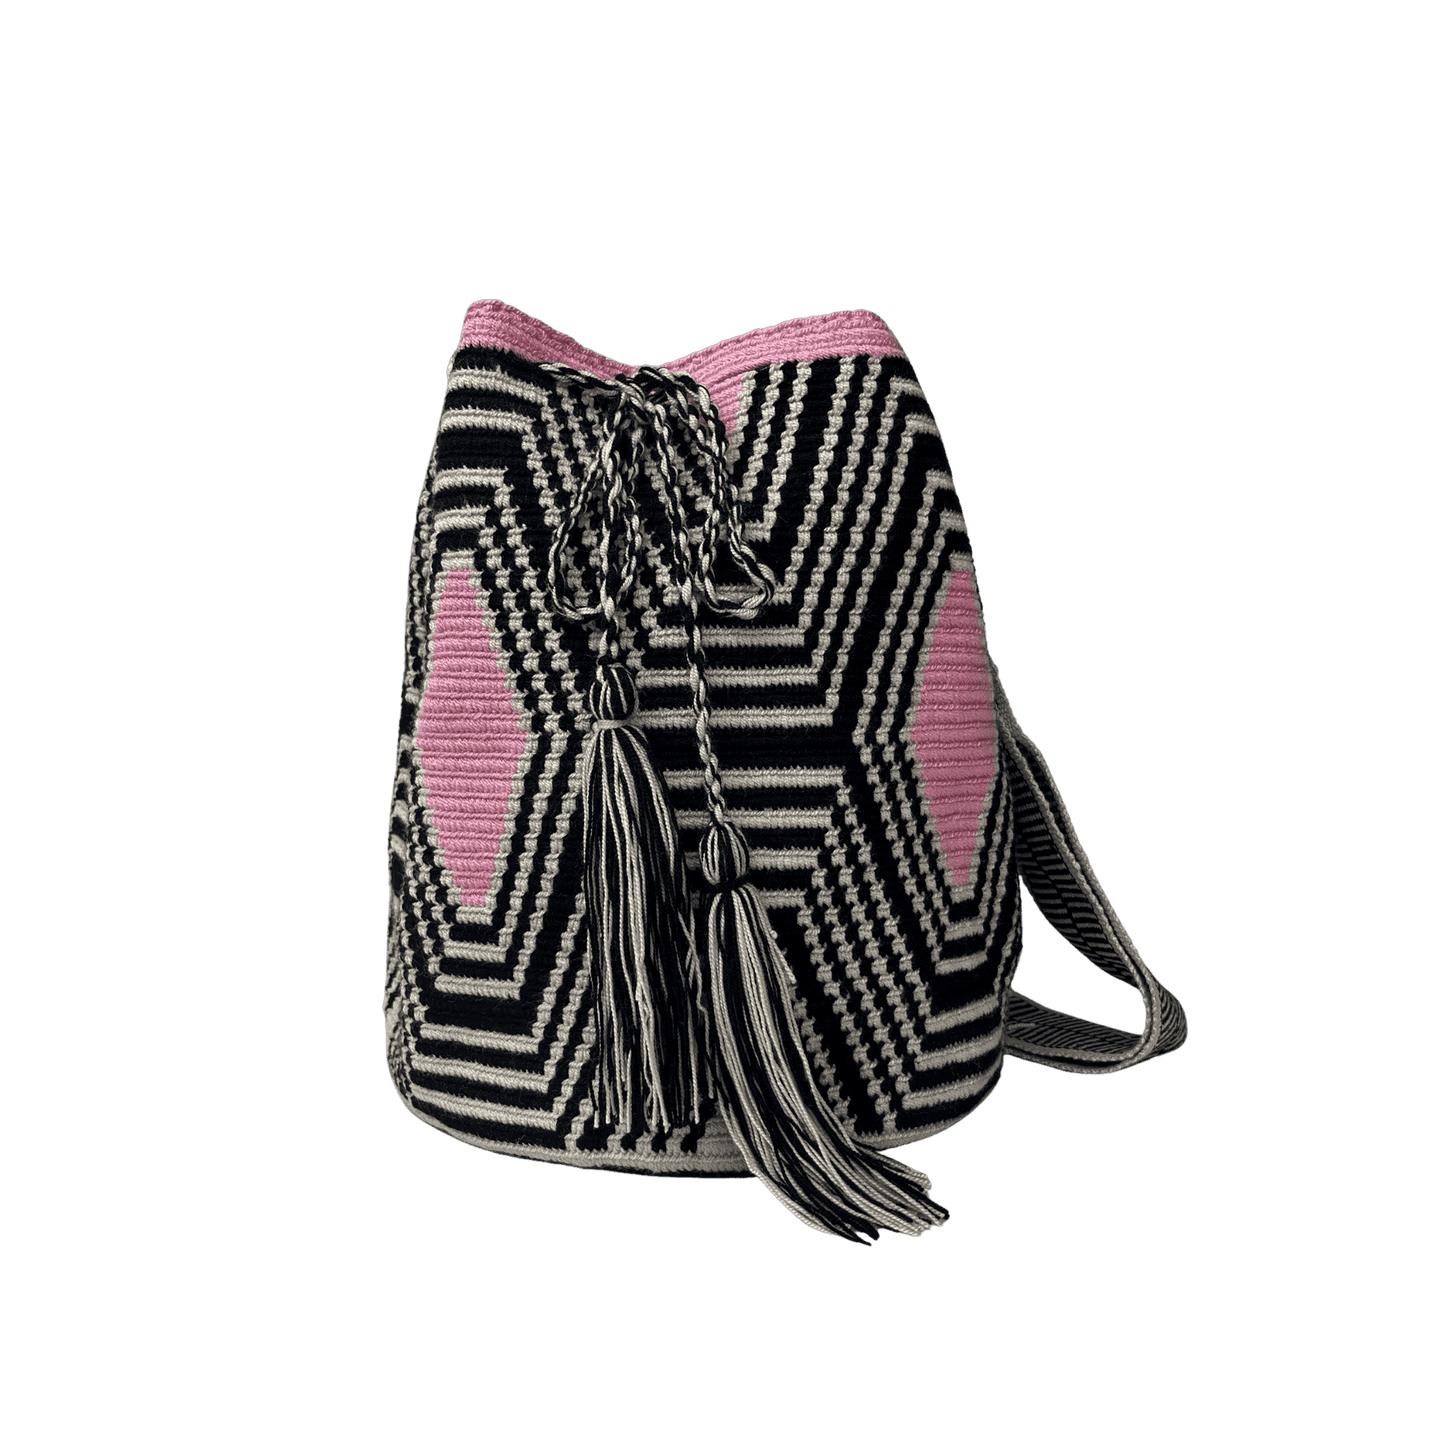 Mochila wayuu tejida a mano a una hebra en colores negro, beige y rosado